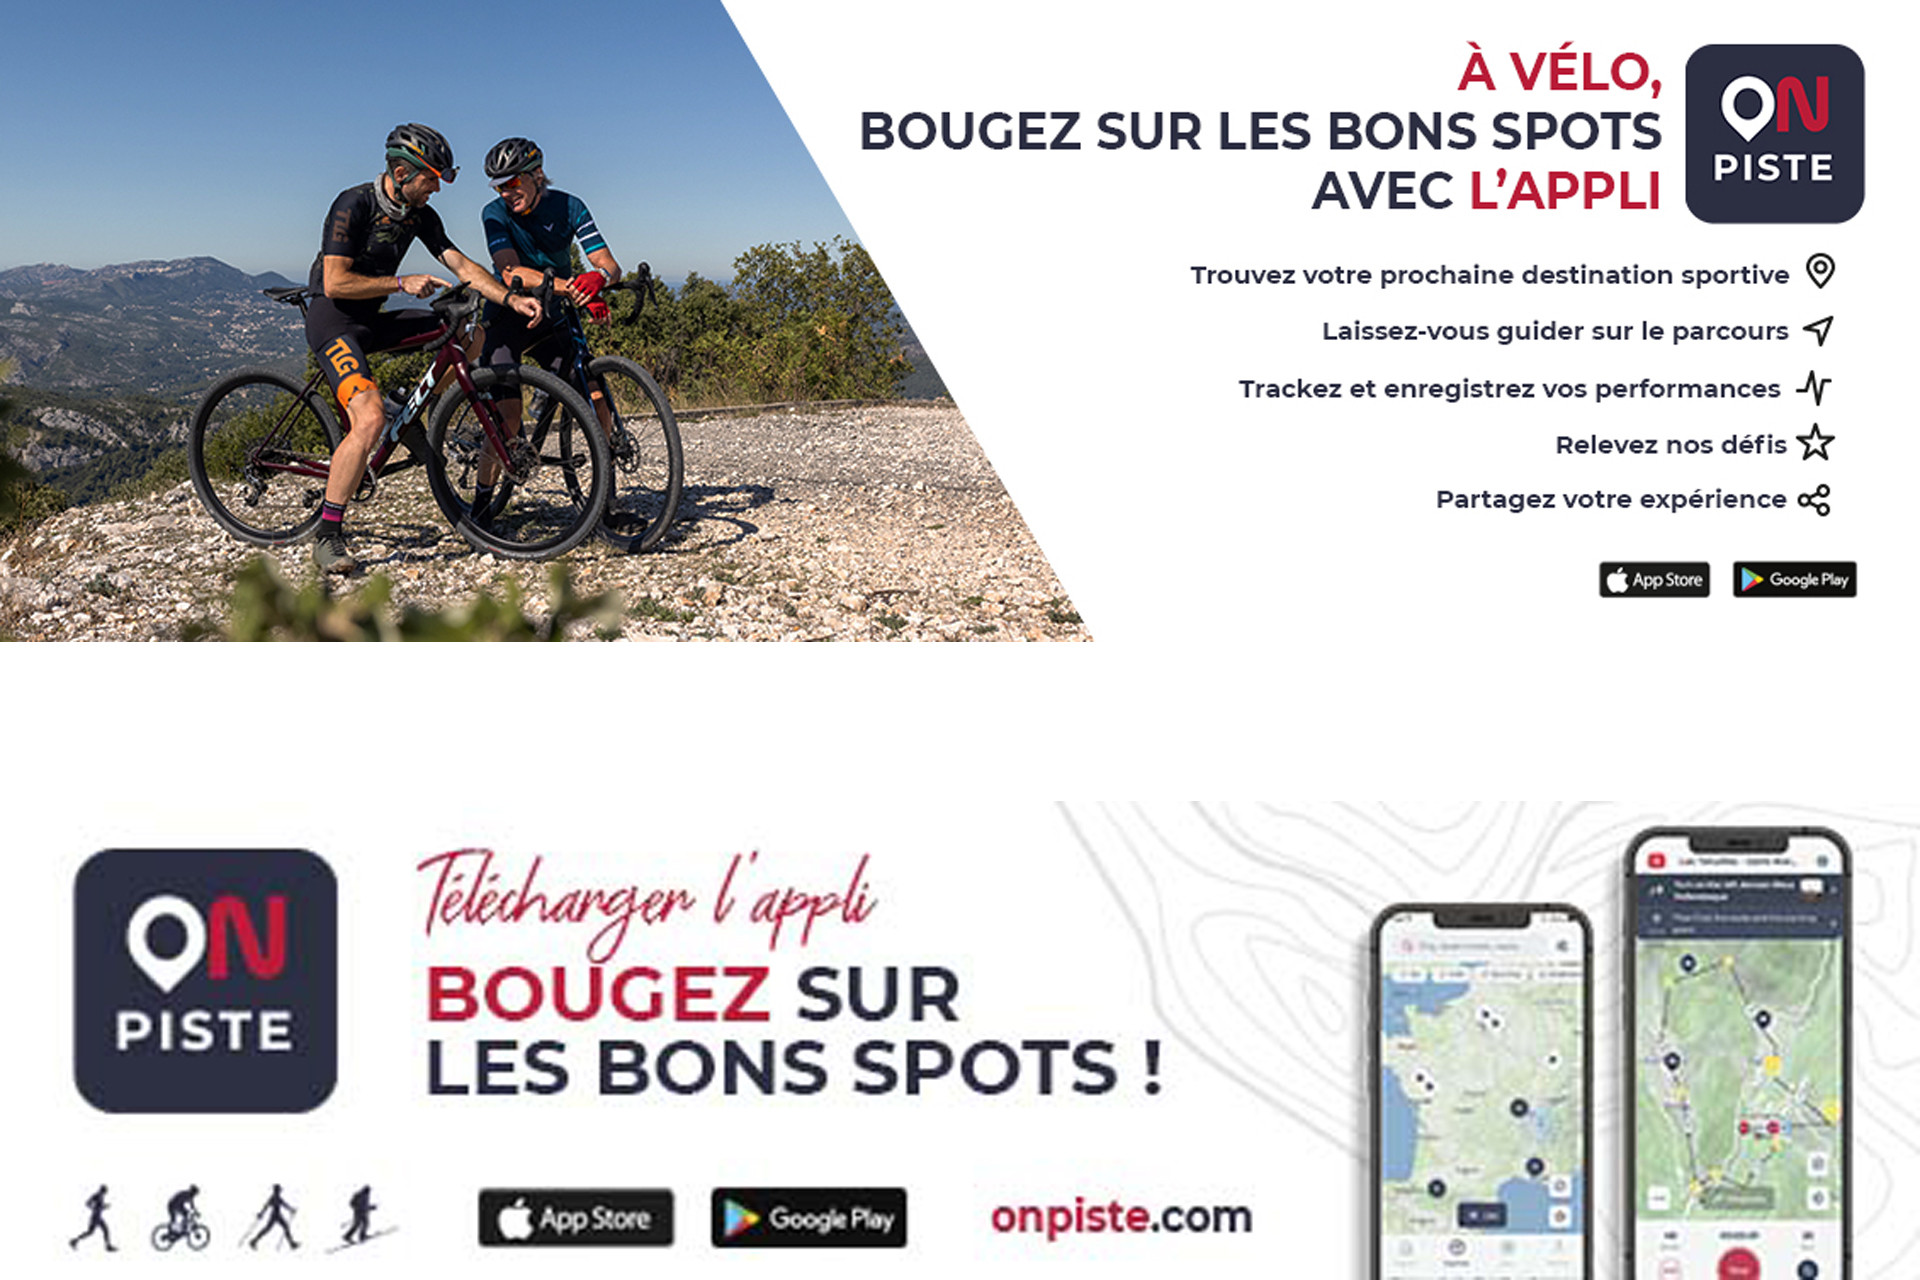 Chamrousse application mobile On Piste vélo station été montagne grenoble isère alpes france